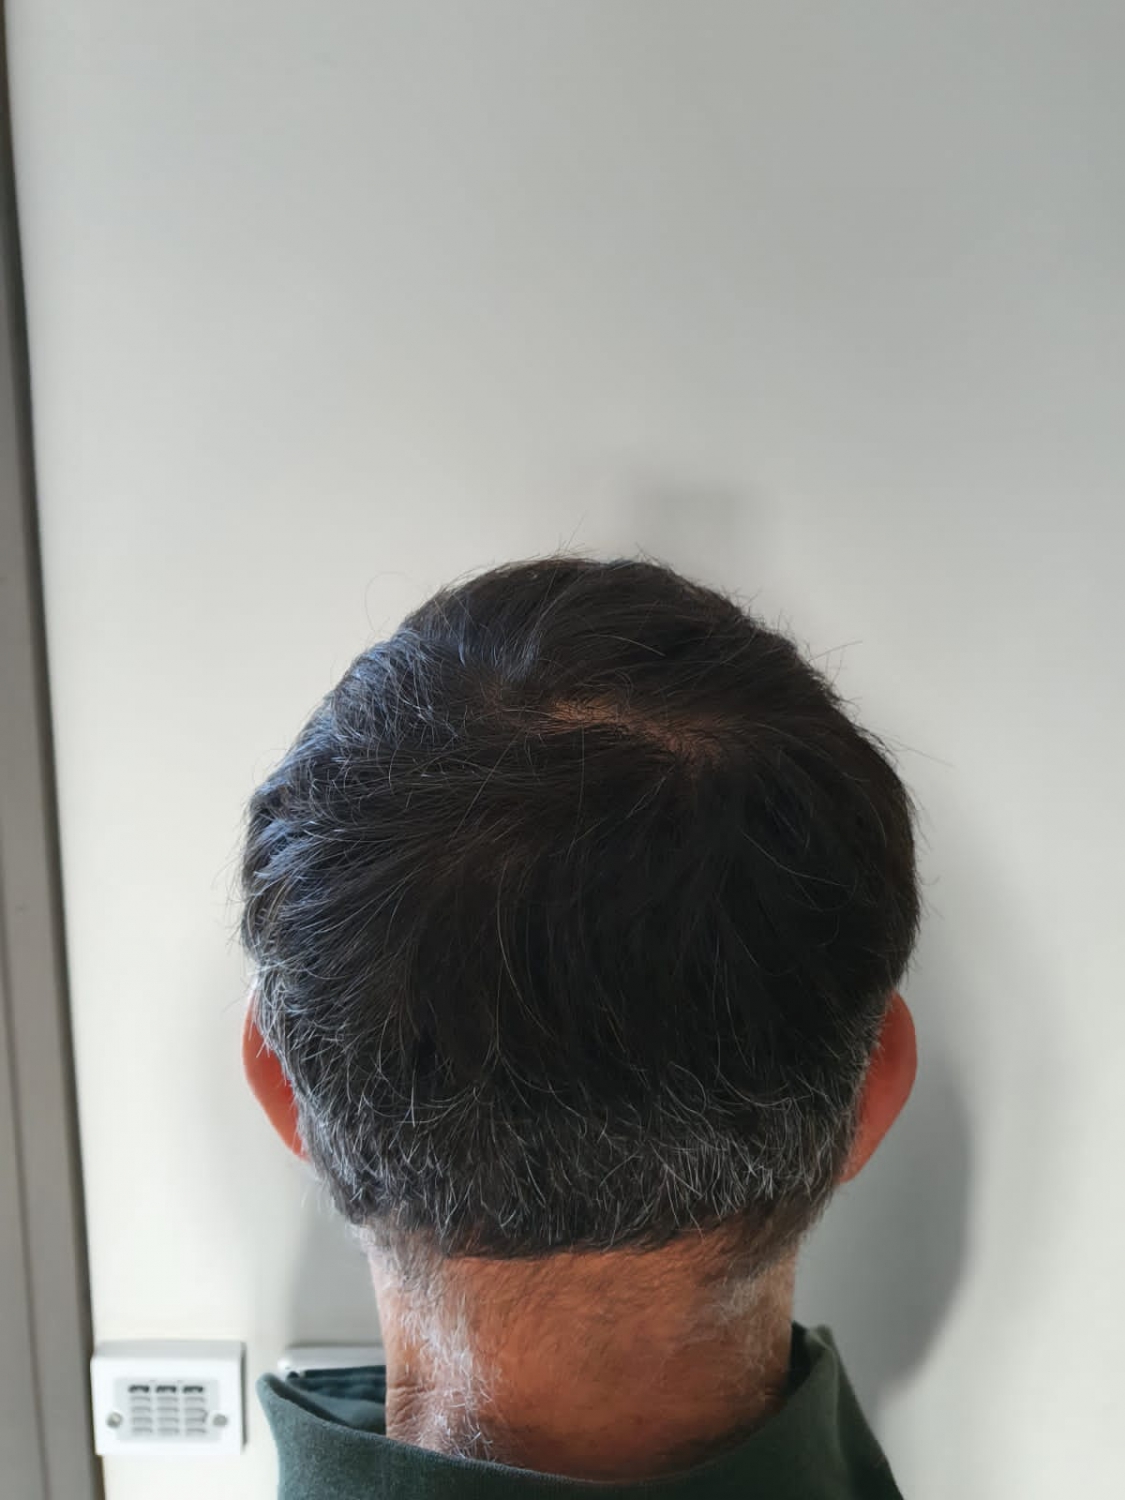 пересадка волос через год (12).jpeg